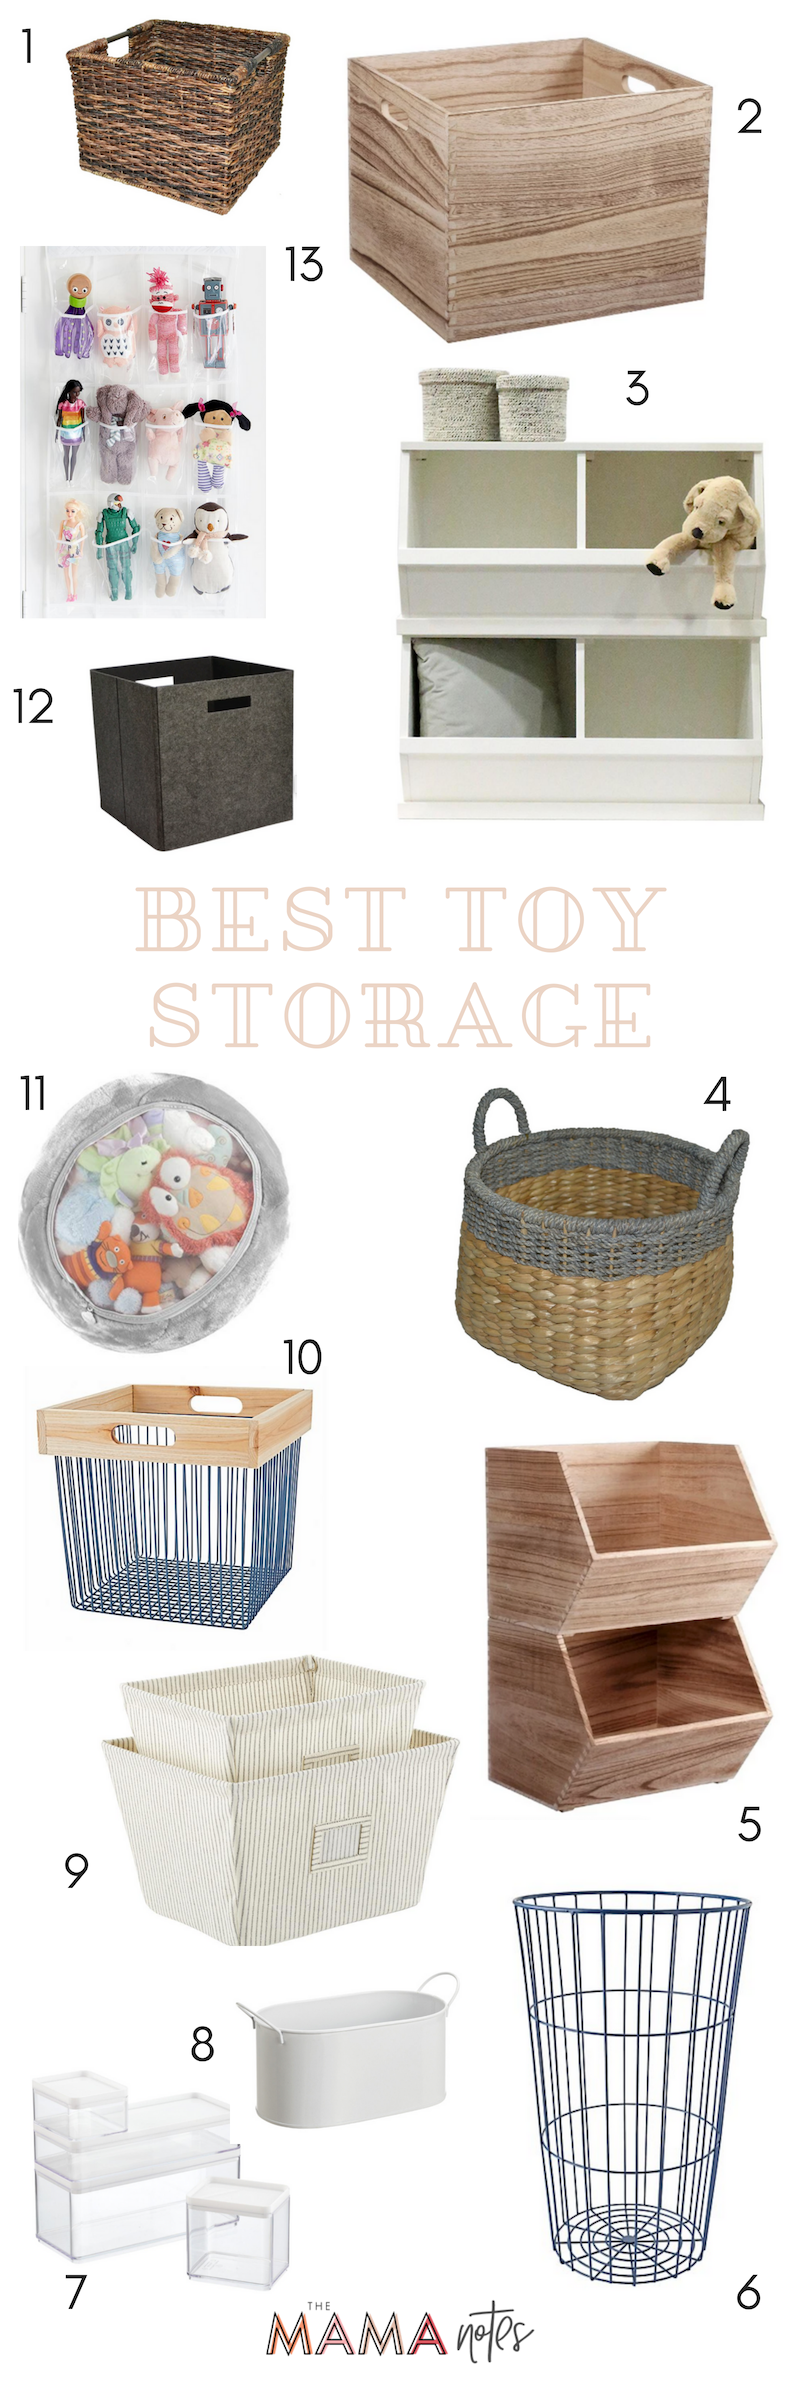 best storage for children's toys